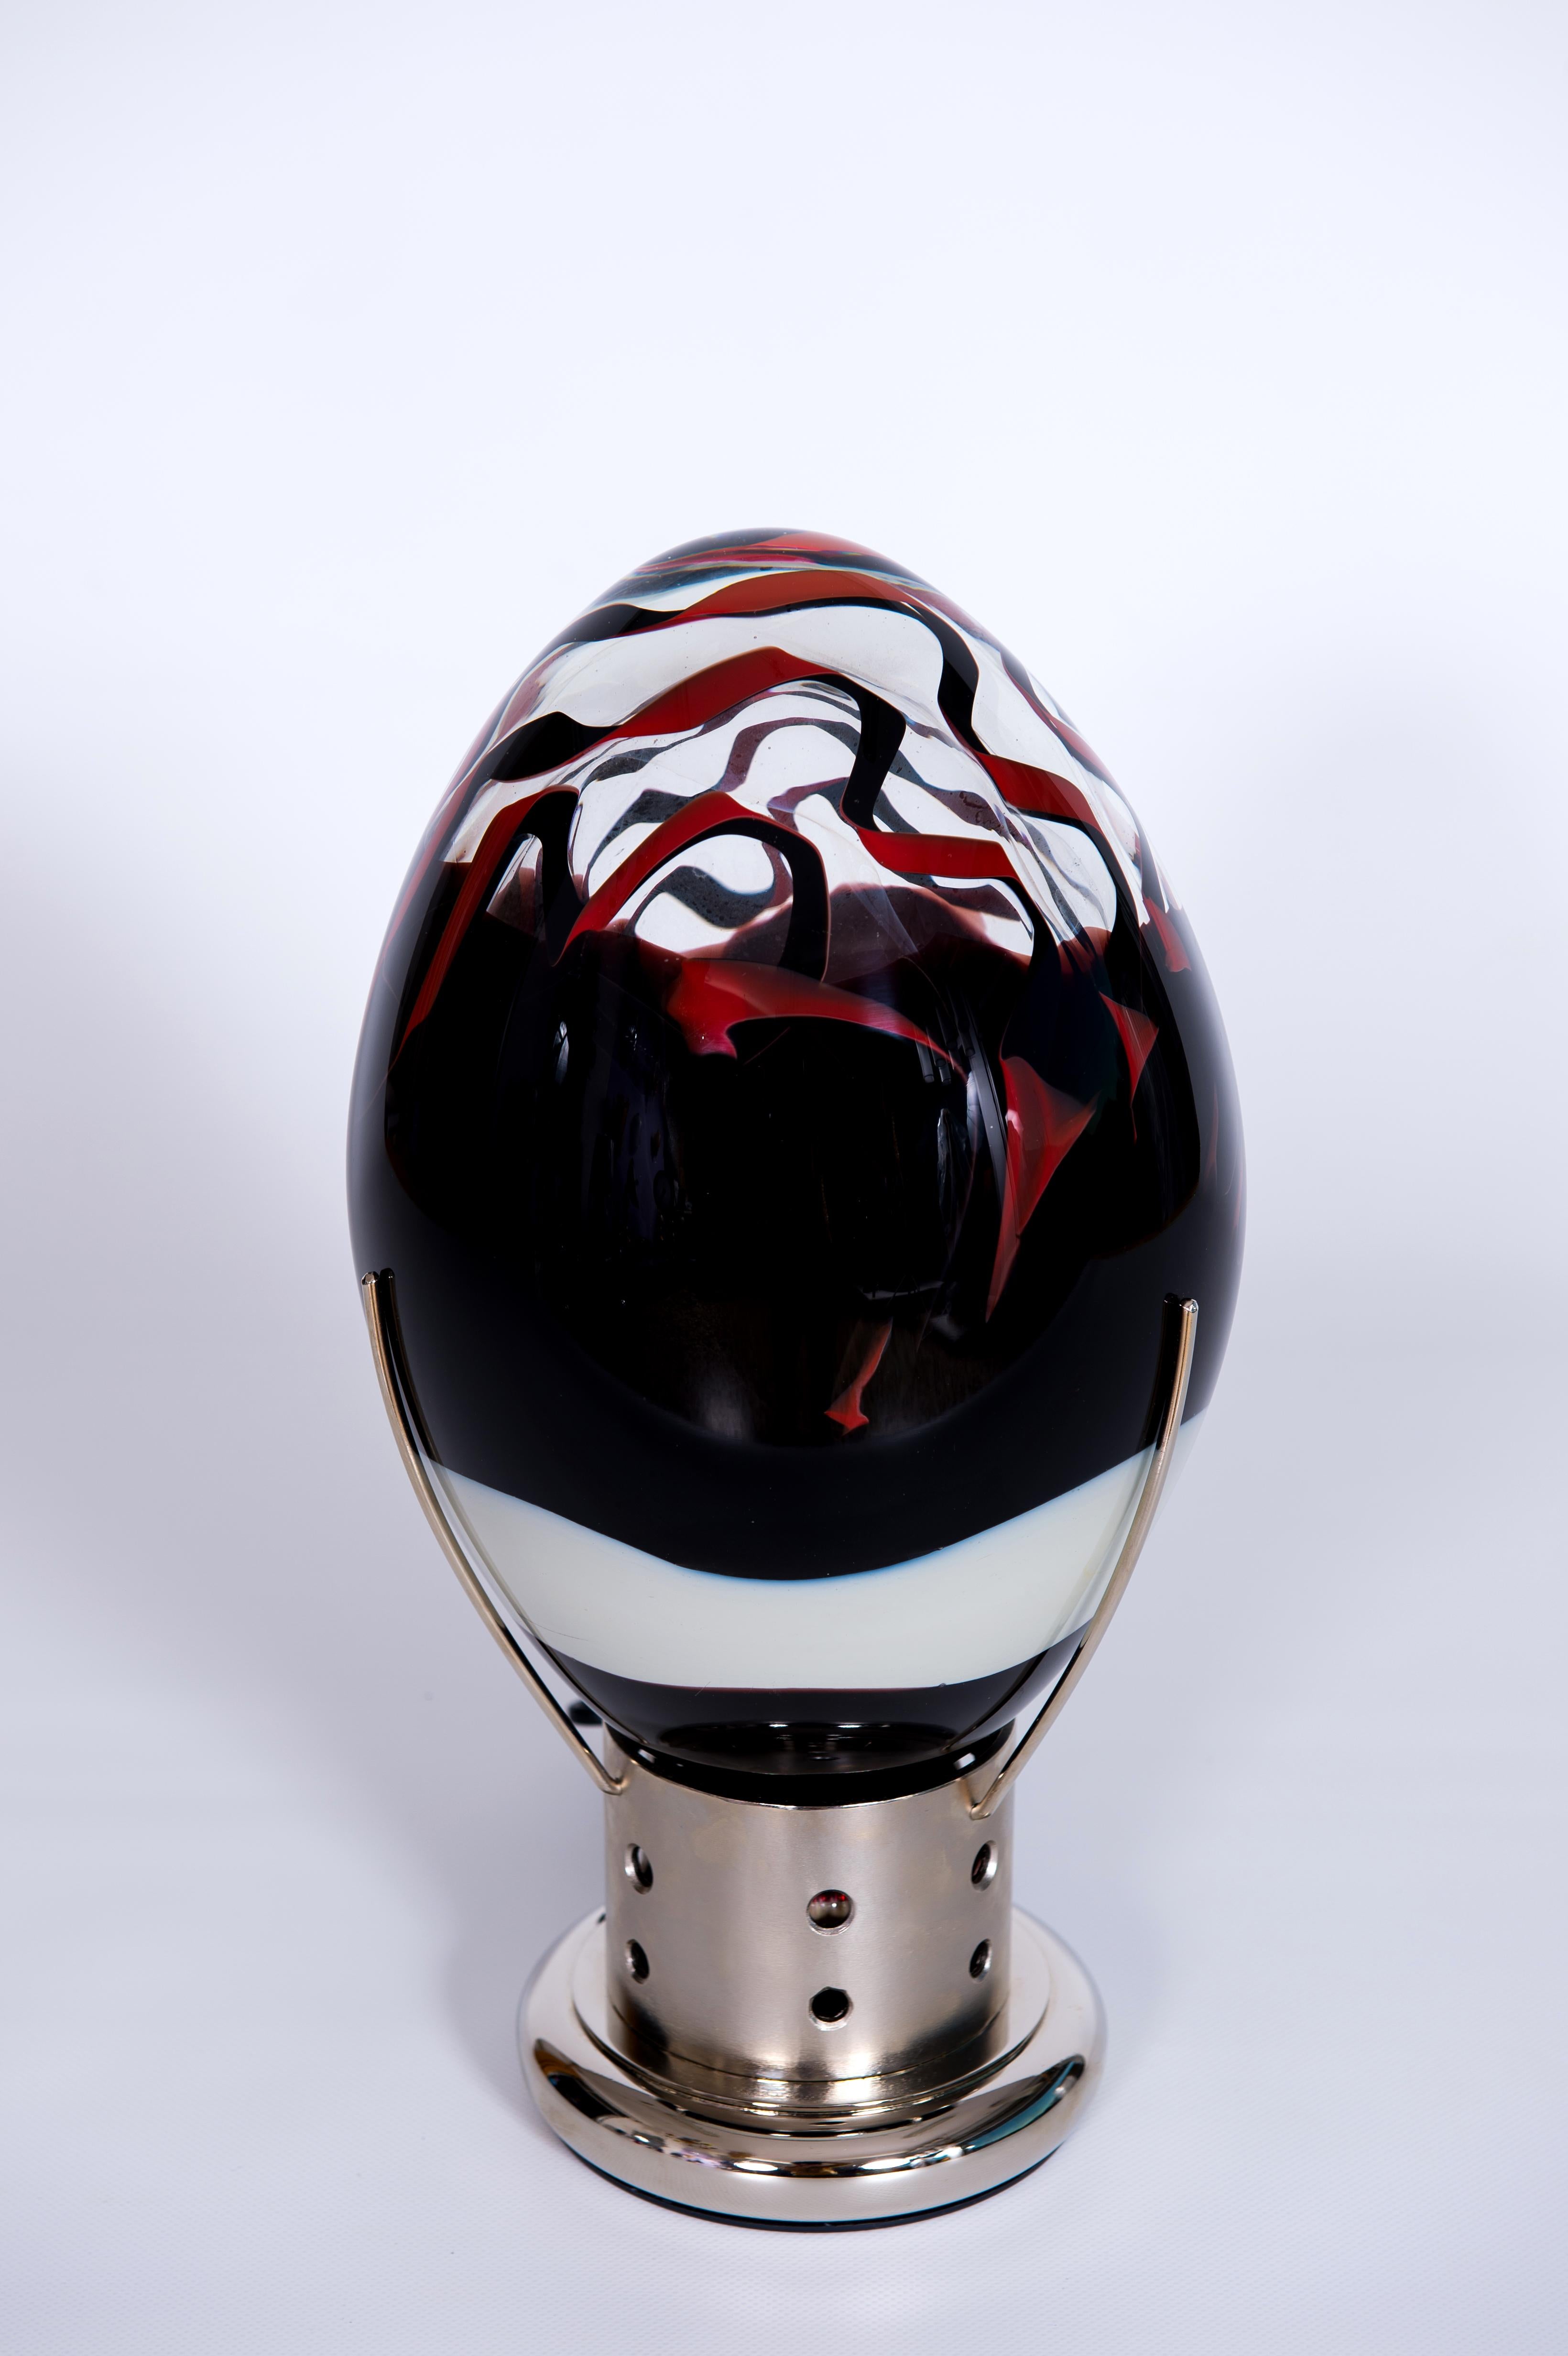 Elegante lampe œuf vénitienne Murano Glass Vibrant Red Dark Metal Base 1990 Italy.
Remarquable lampe de table en forme d'œuf vénitien, dotée d'une coquille en verre de Murano d'un rouge éclatant et d'une base en métal poli.
Une lampe de table œuf